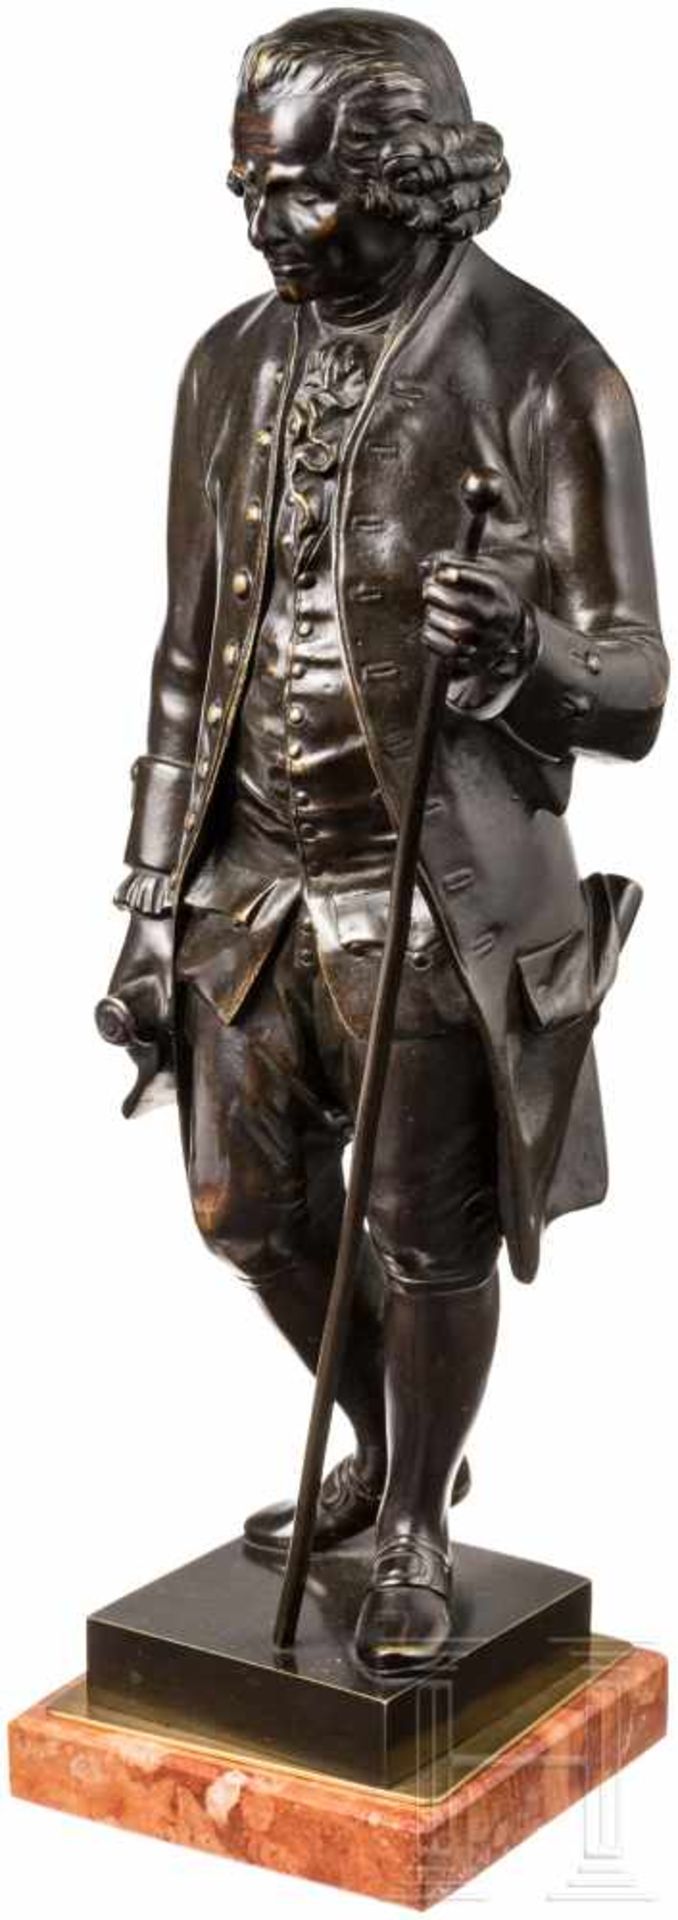 Bronzefigur im Stil des 18. Jhdts. (Voltaire?)Massive Bronze, patiniert. Stehende Ganzfigur in